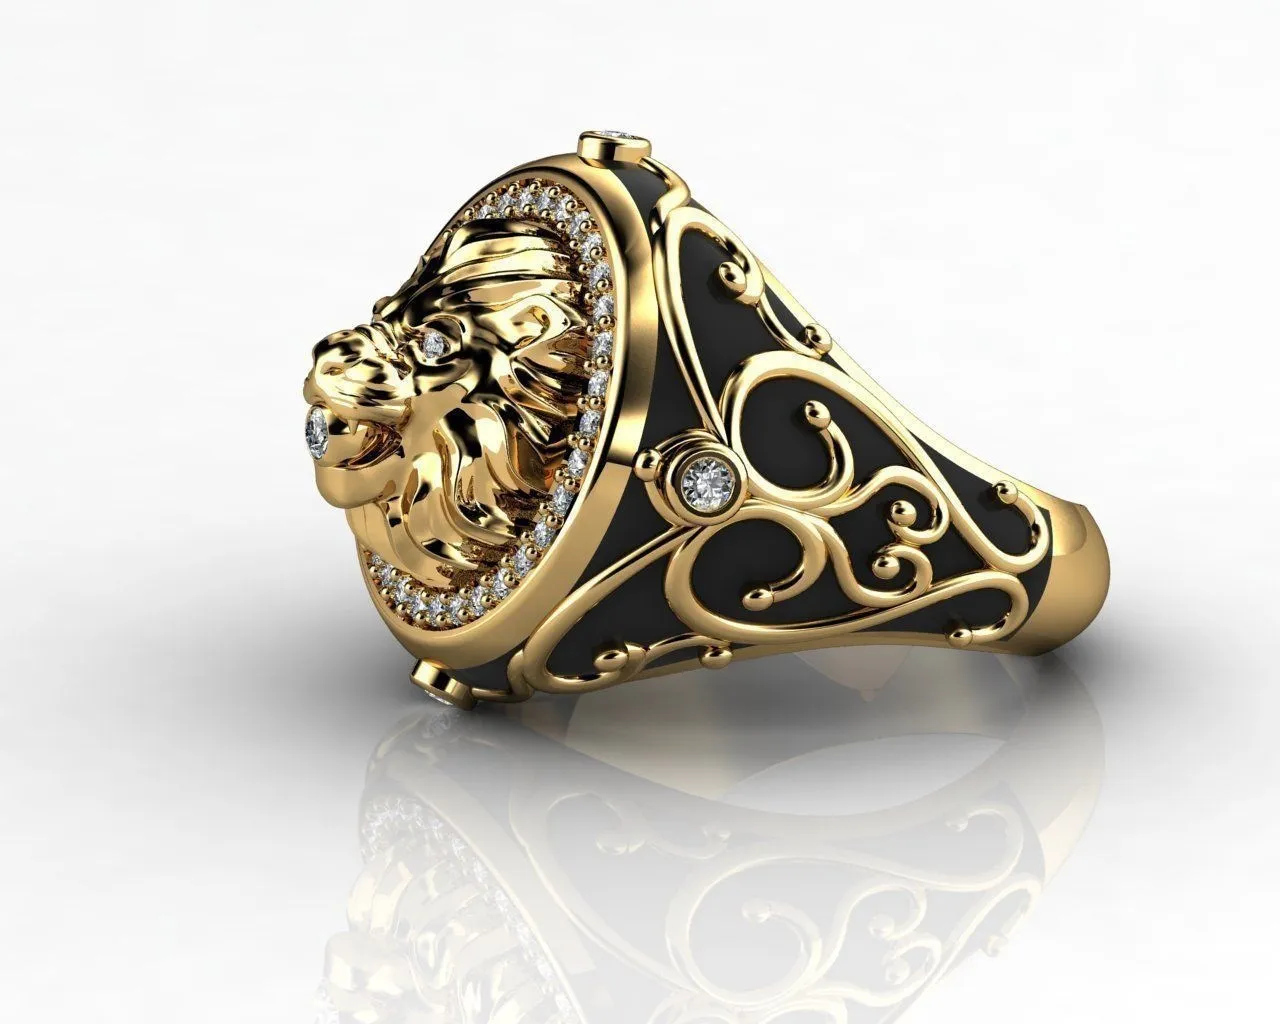 HOYON 18K זהב צבע מלא יהלומי זירקון האריה טבעת עבור גברים של חתונה פאנק סגנון אירוסין טבעת לגברים של רטרו נשים של תכשיטים